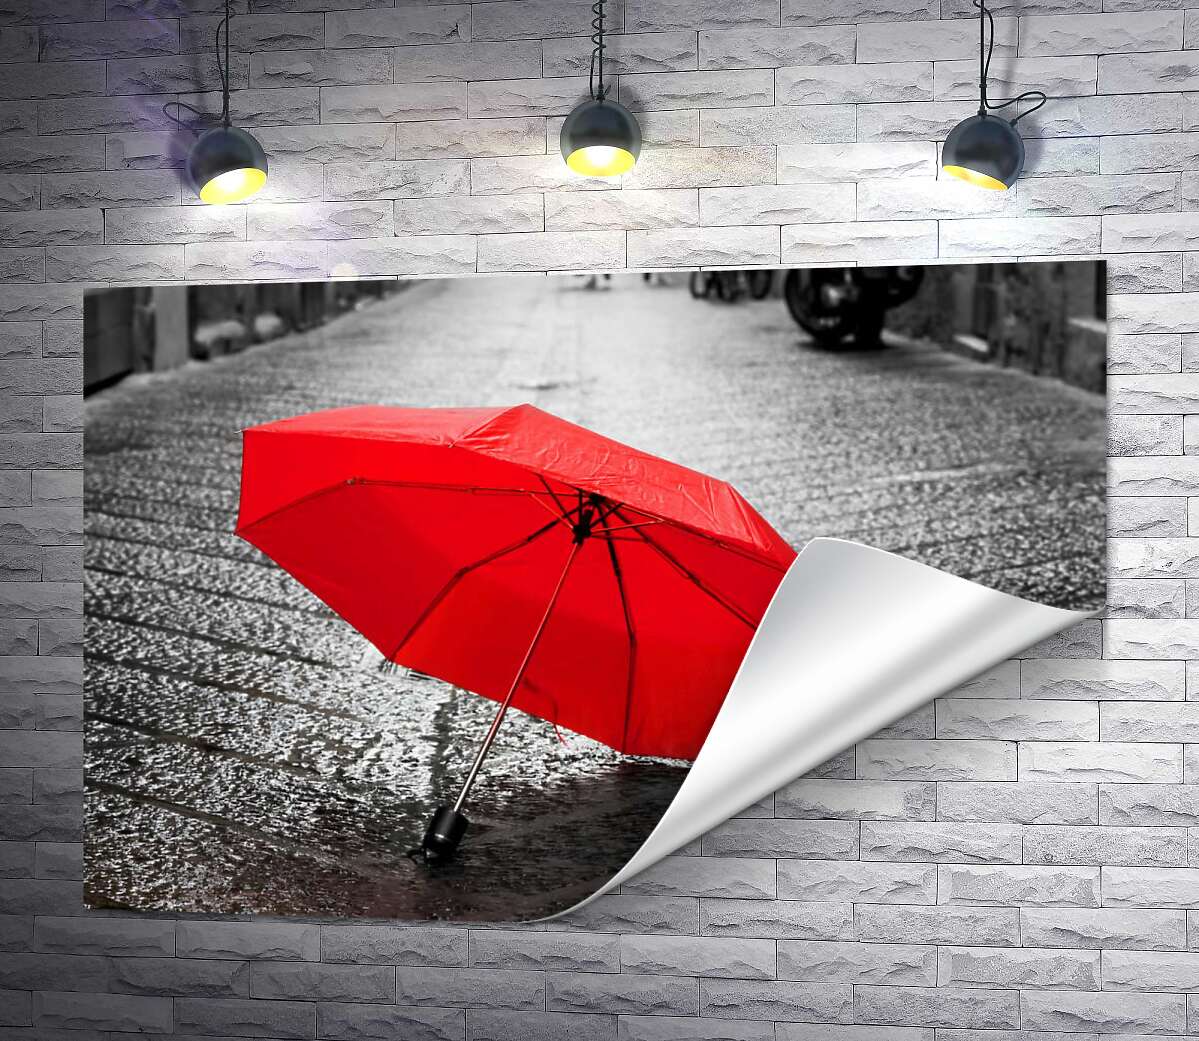 друк Соковито-червона парасолька на мокрій бруківці